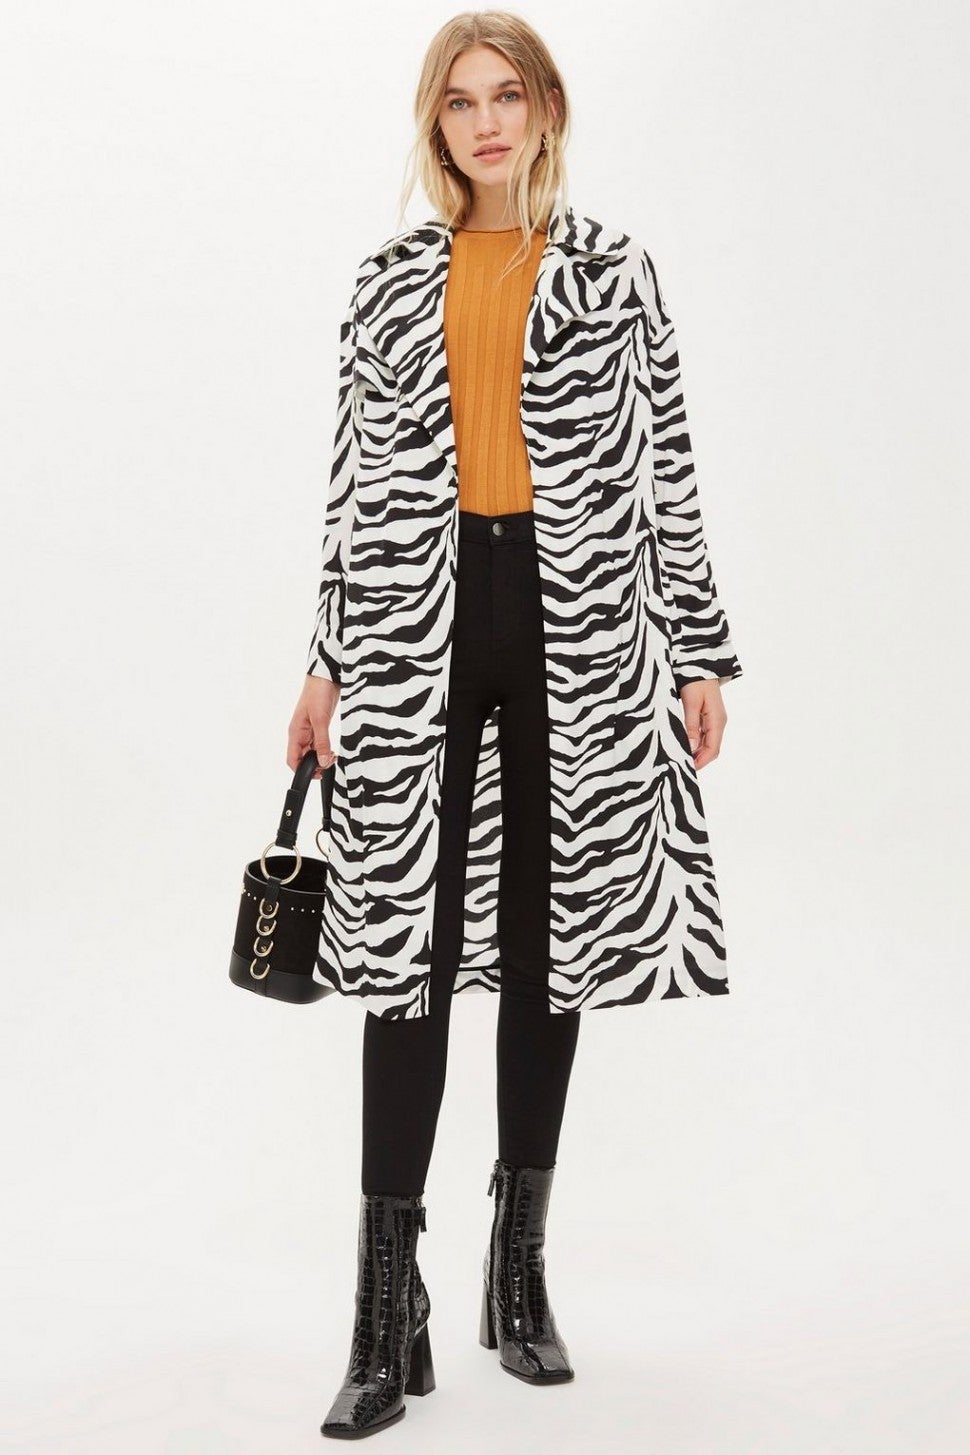 Topshop zebra print coat